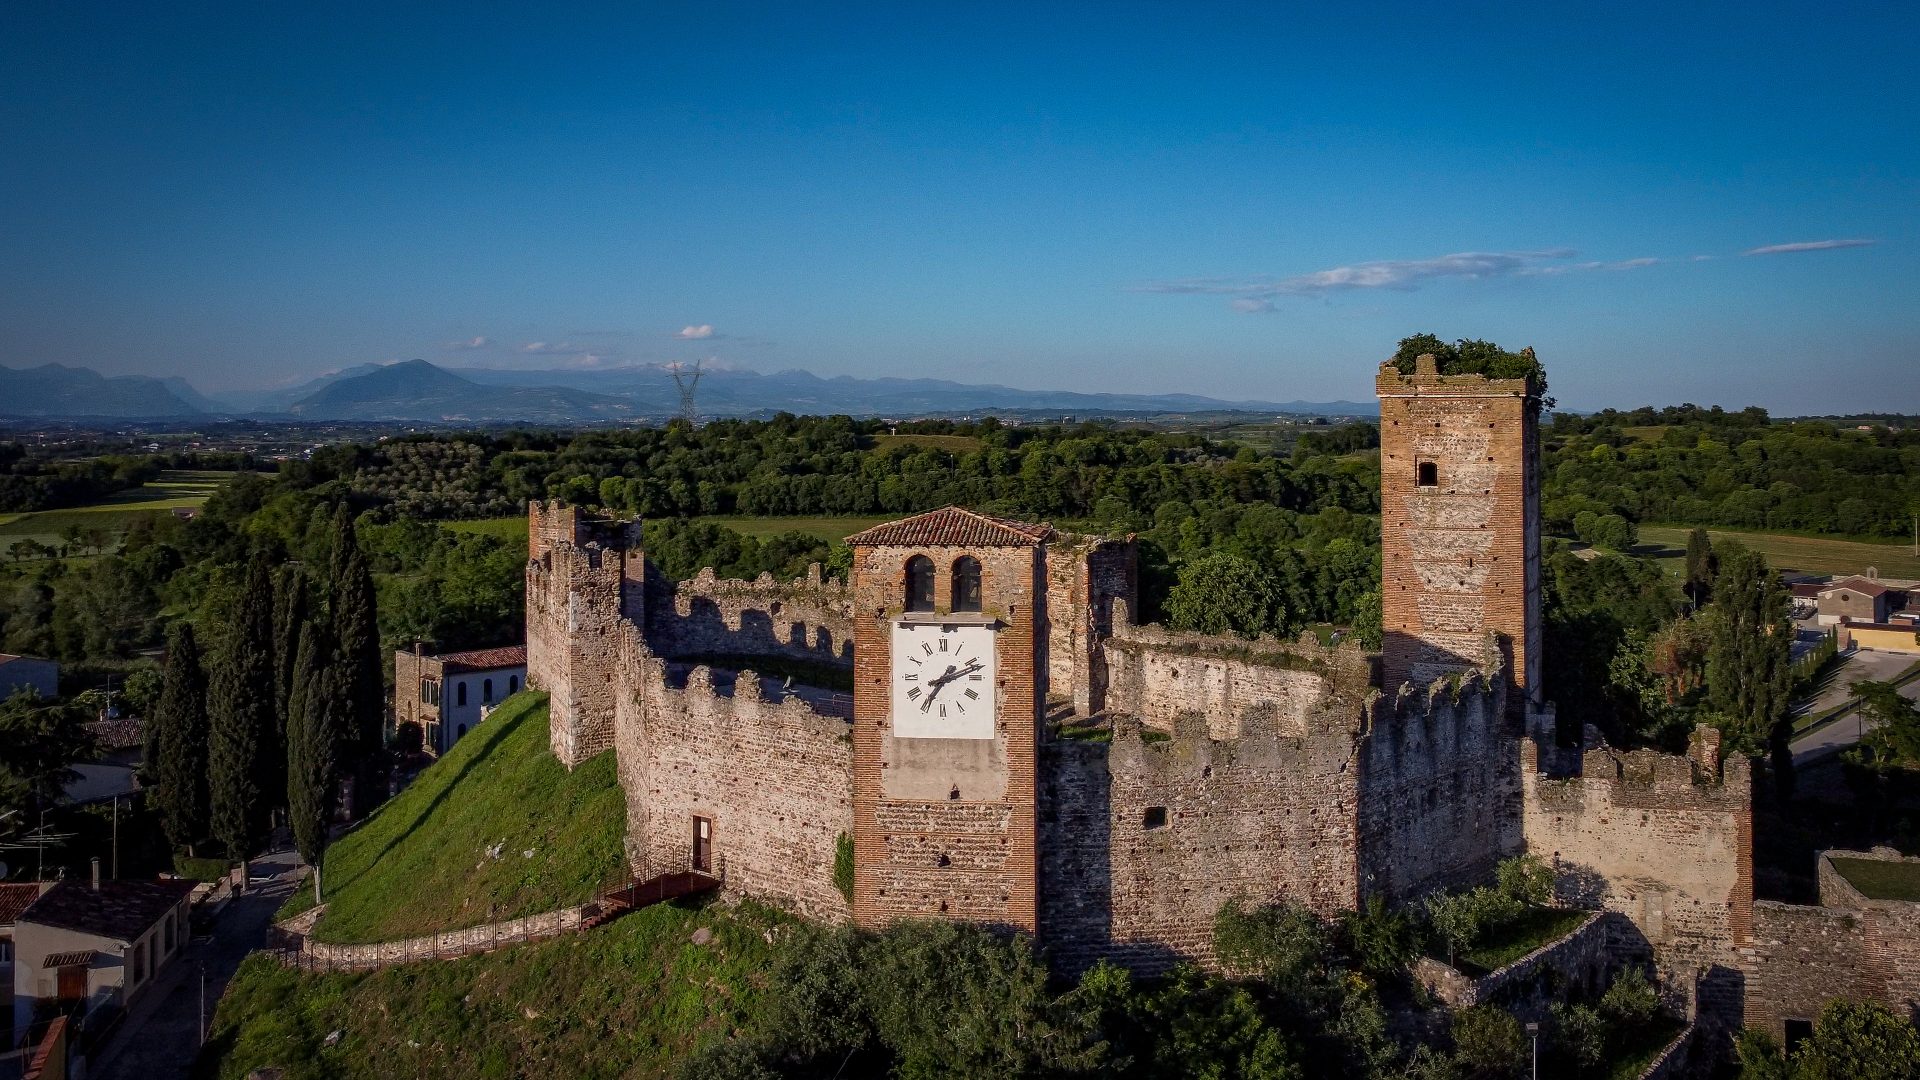 Veduta aerea delle mura di un castello in campagna, al centro una torre con l'orologio